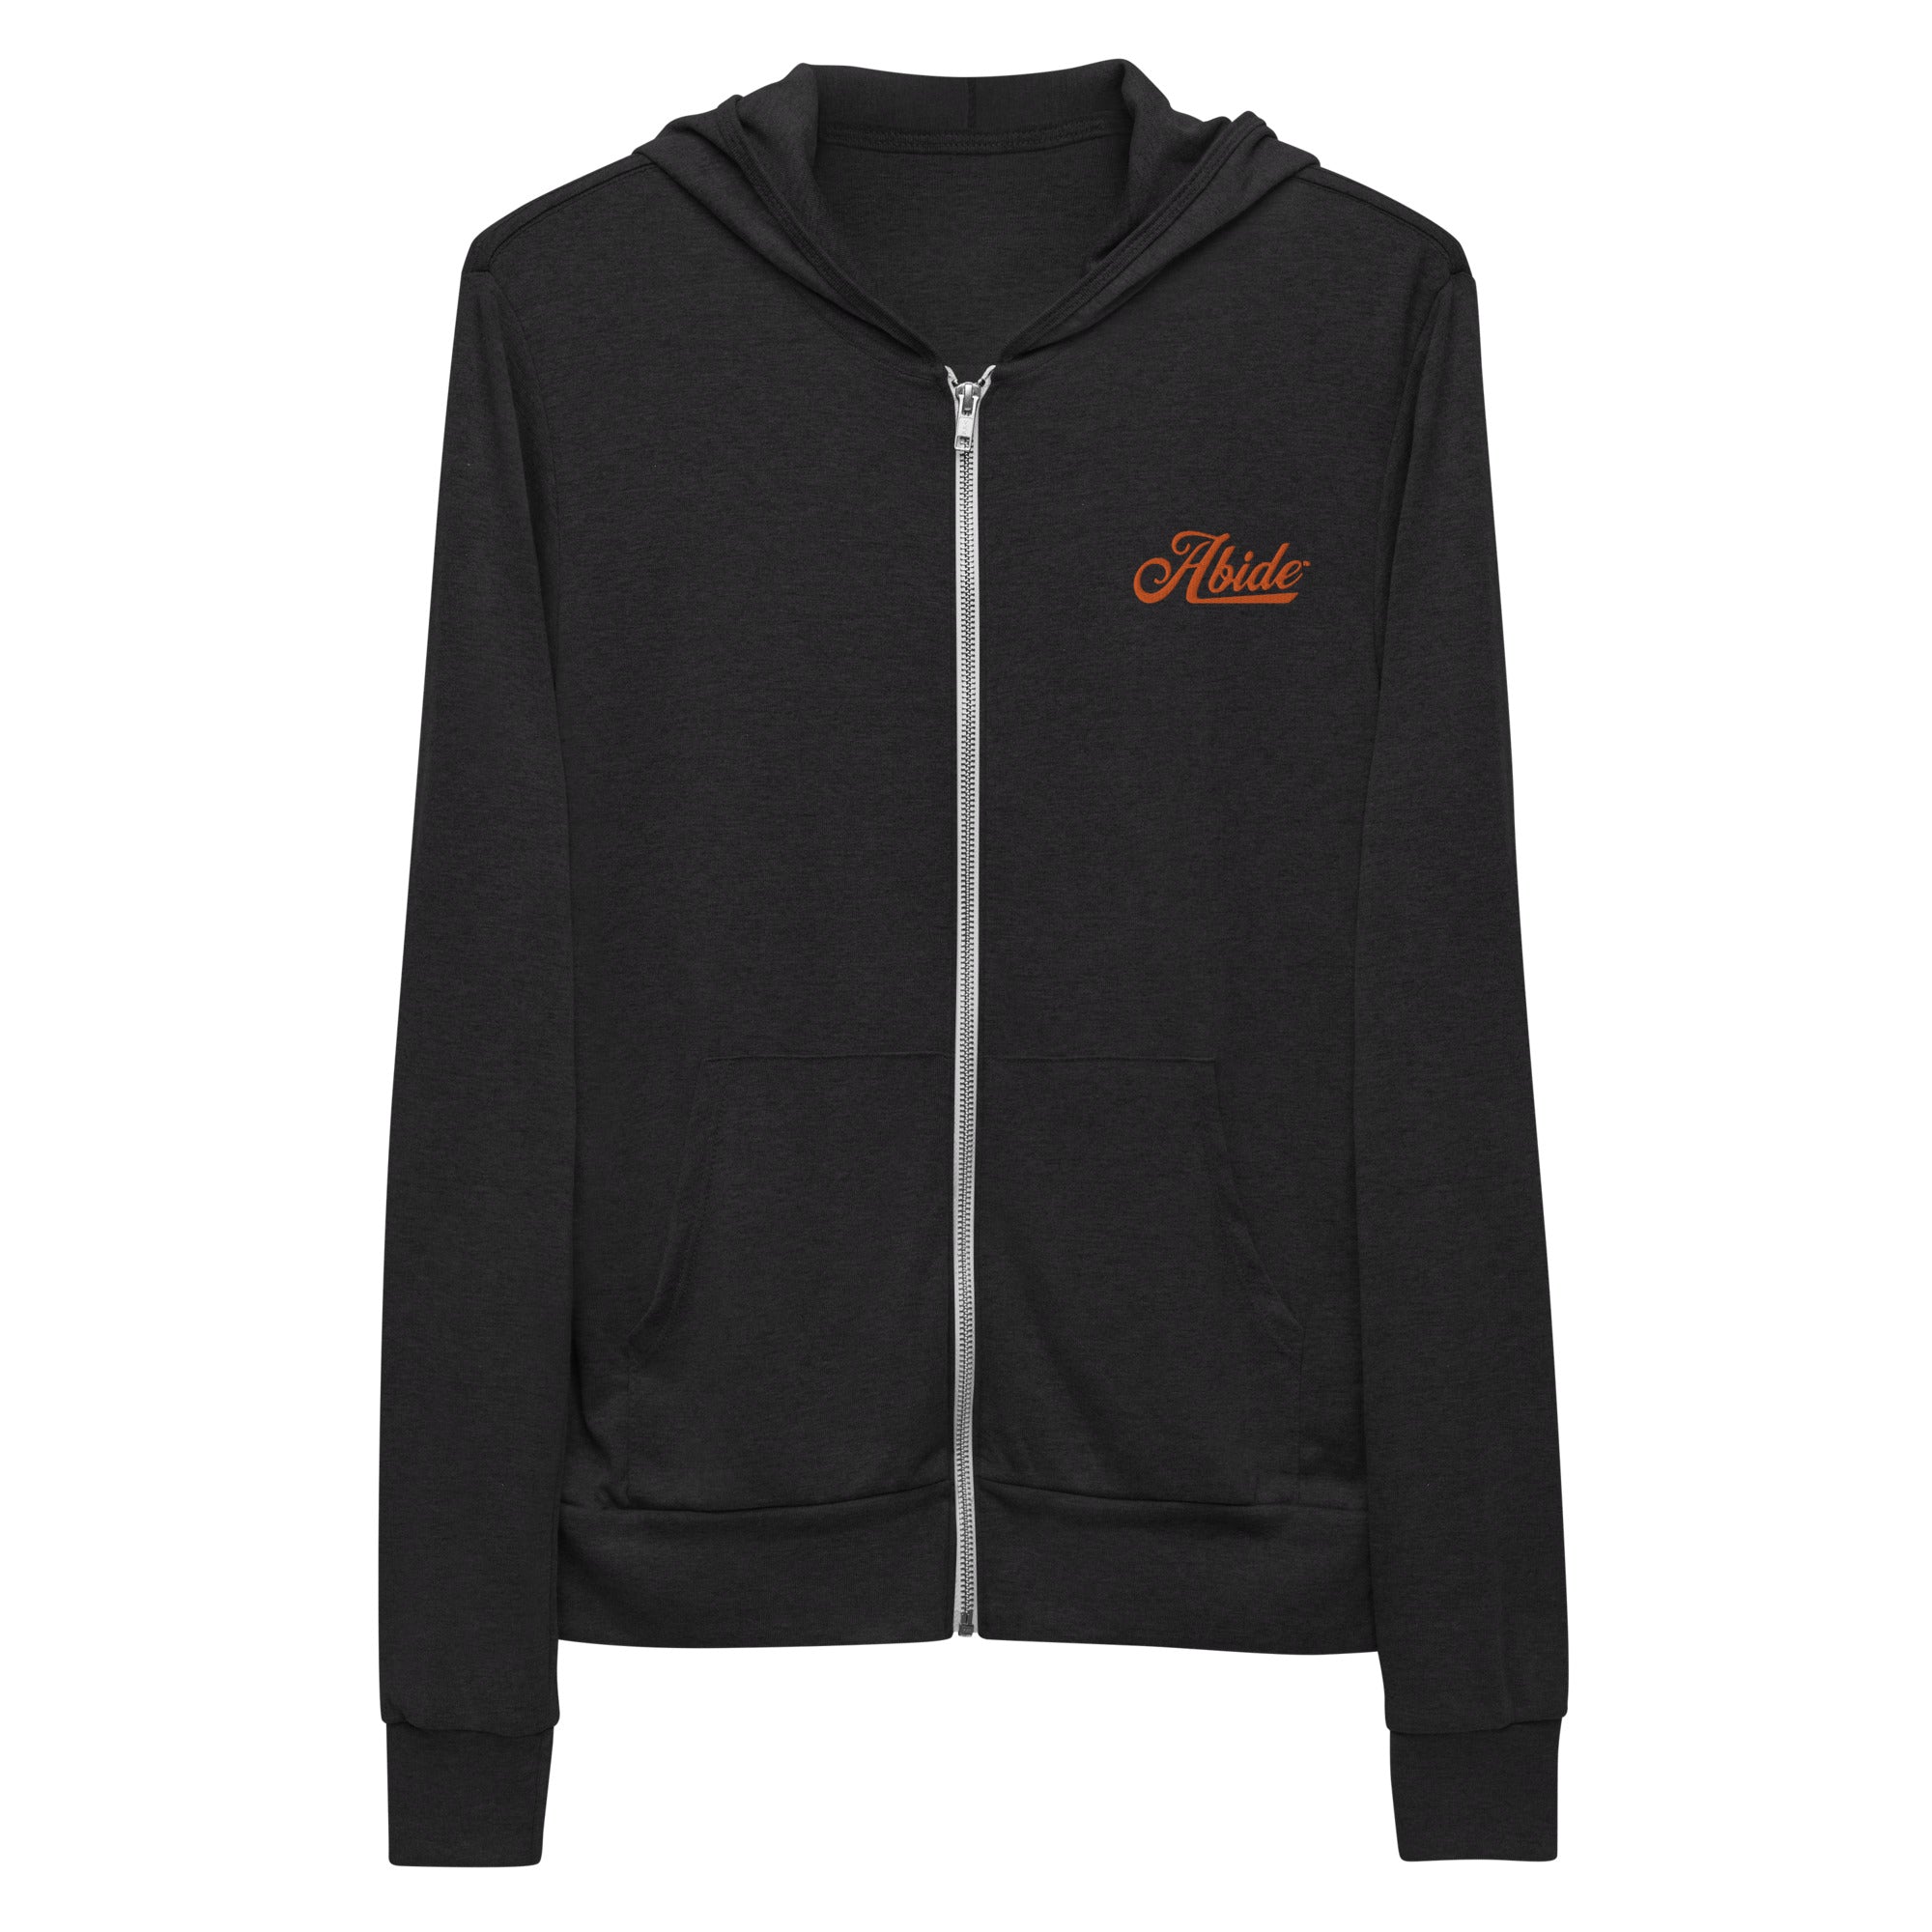 Abide Unisex zip hoodie